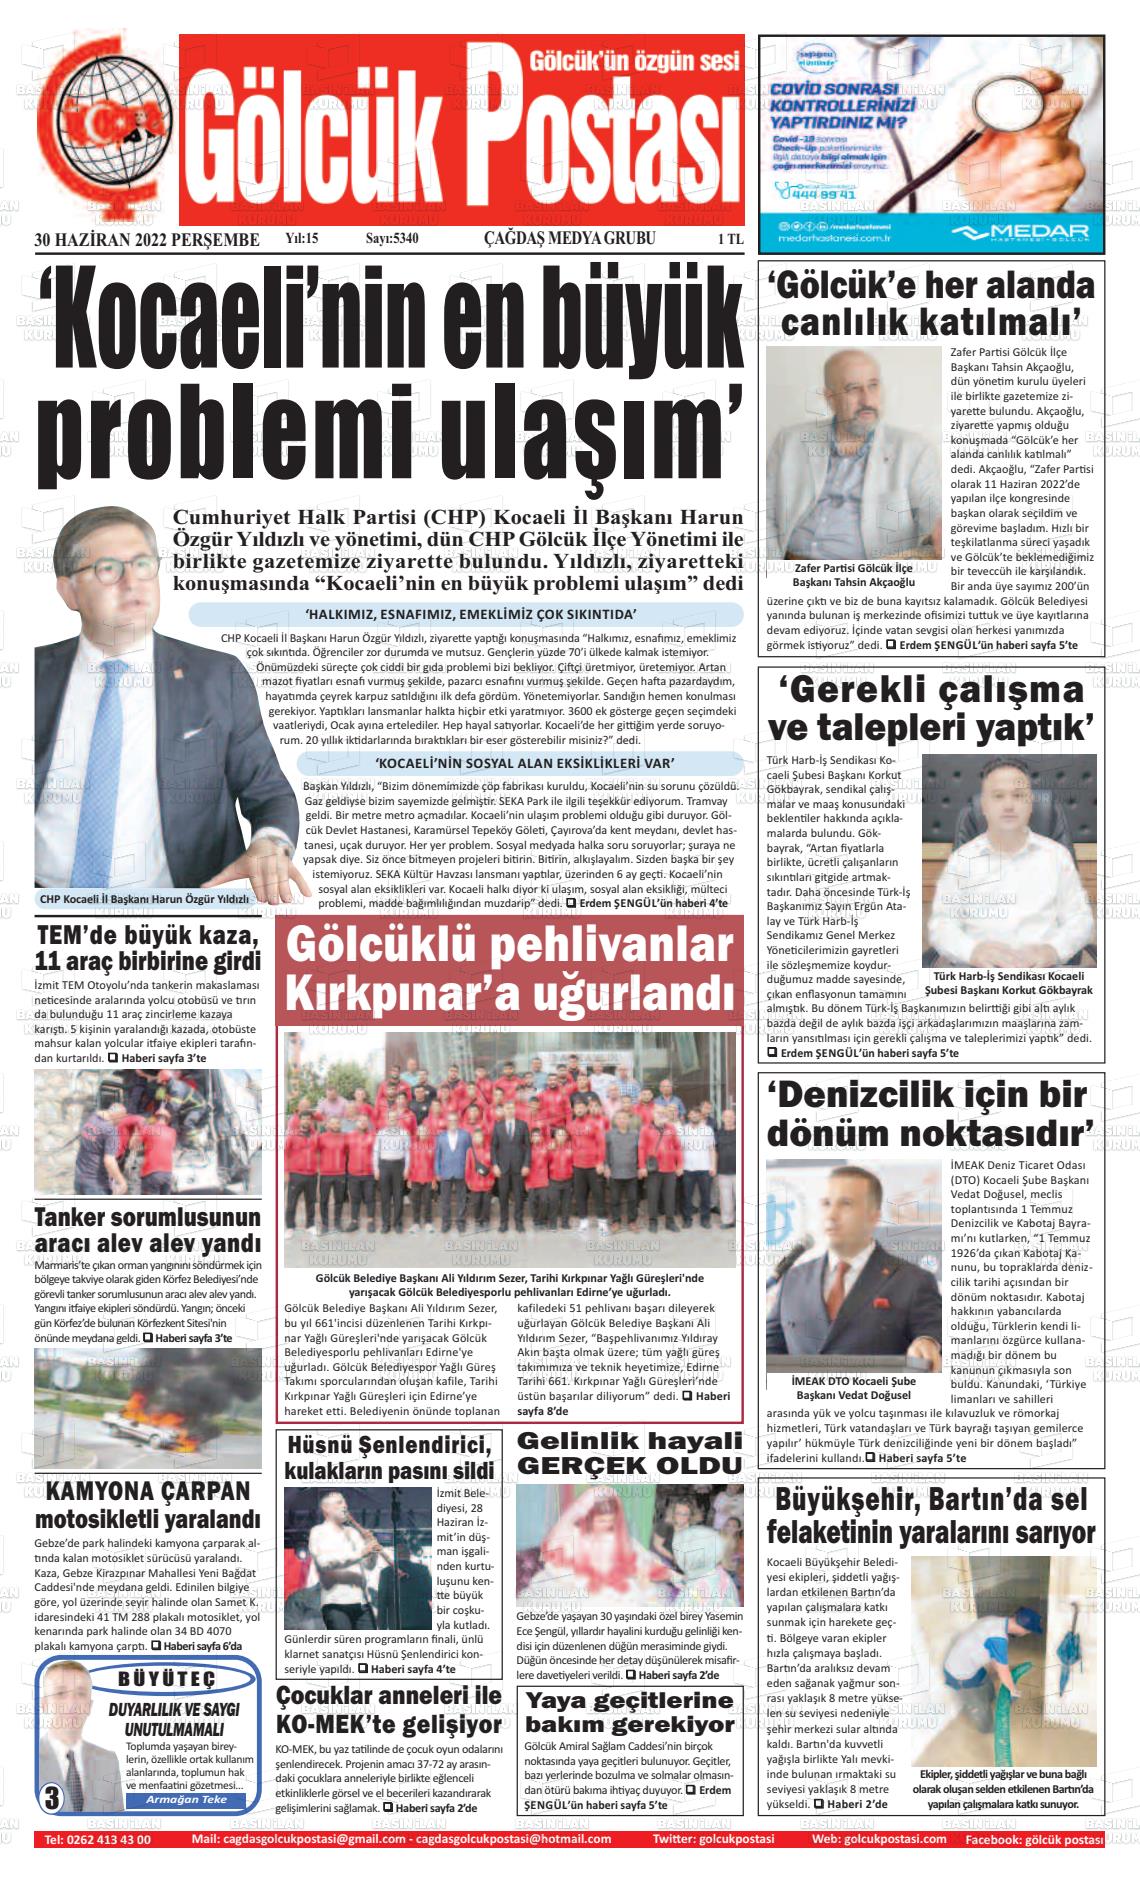 30 Haziran 2022 Gölcük Postasi Gazete Manşeti